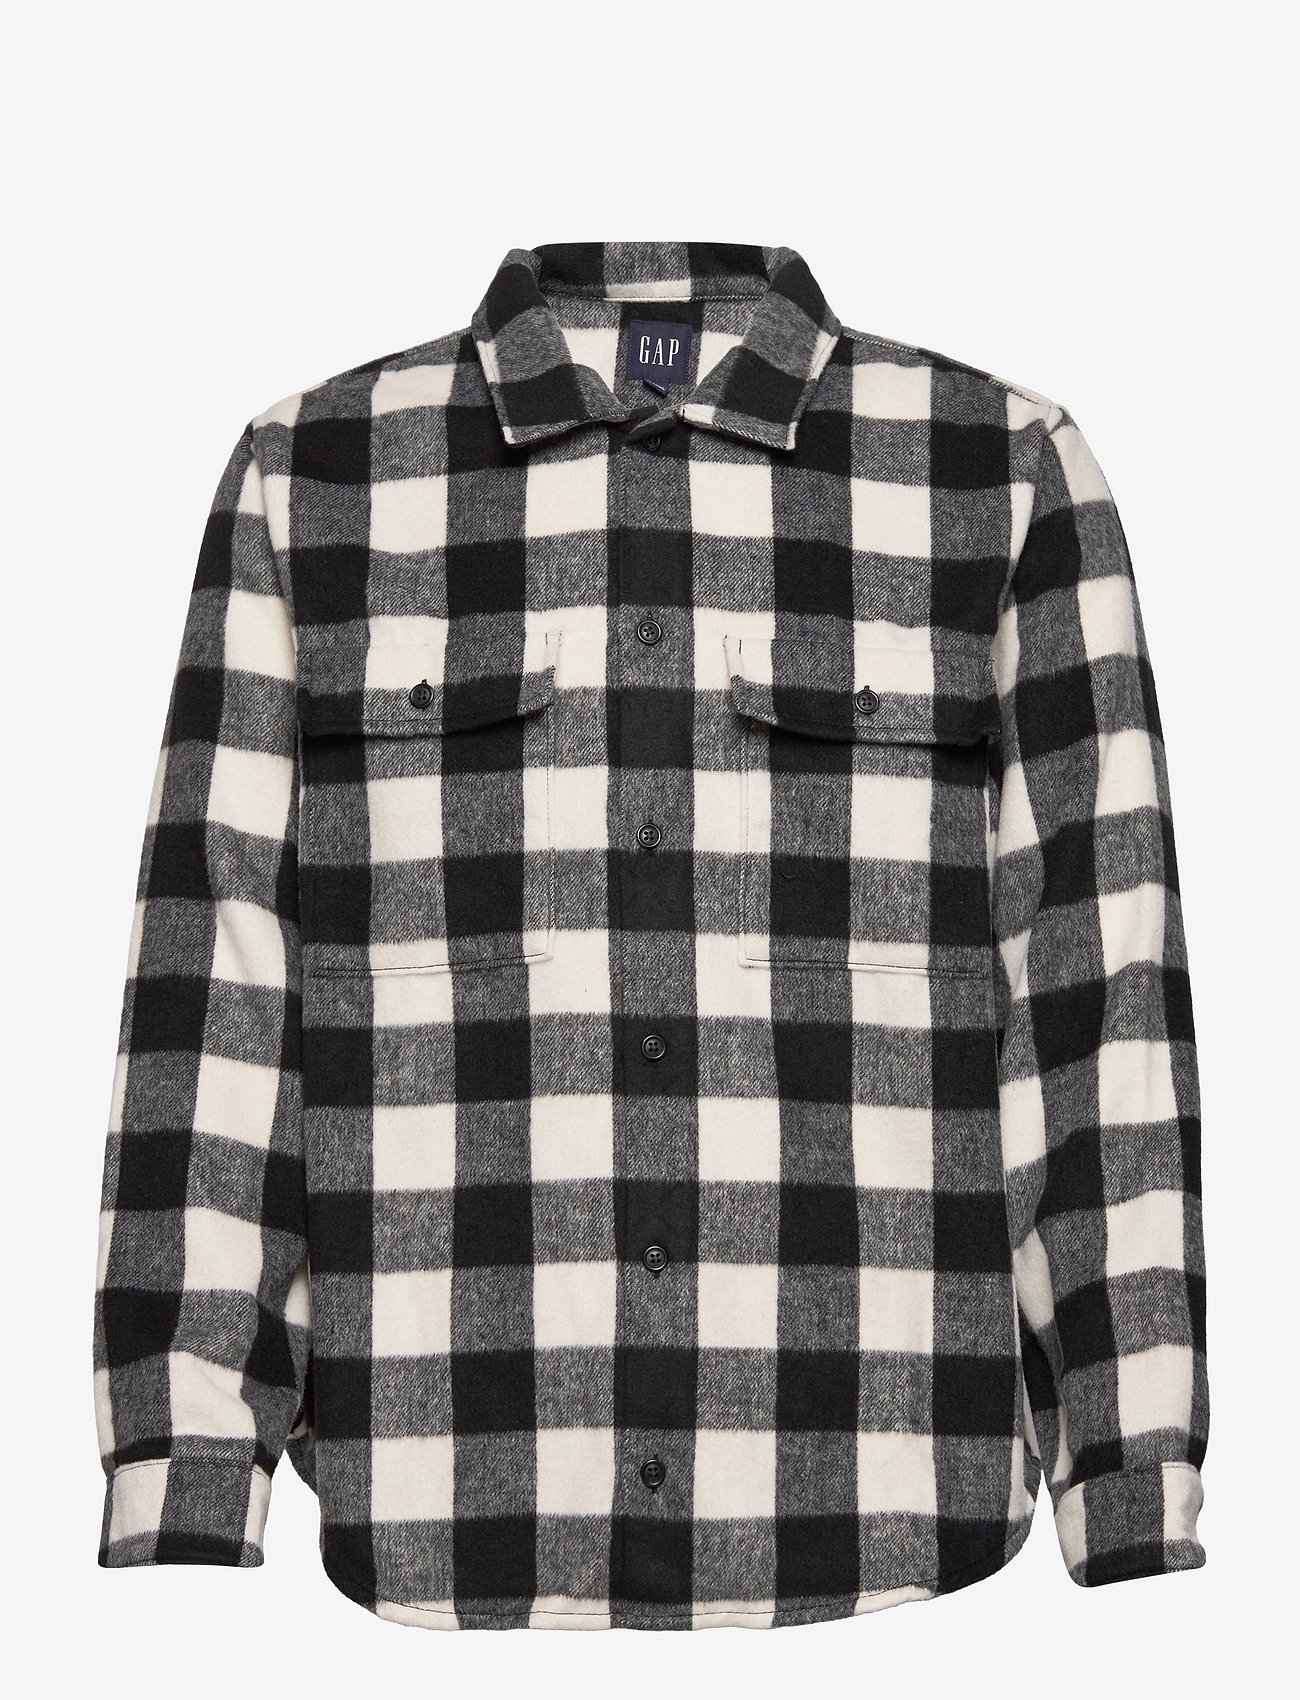 GAP Cozy Flannel Shirt Jacket - www.rendez-vous-boutique.com